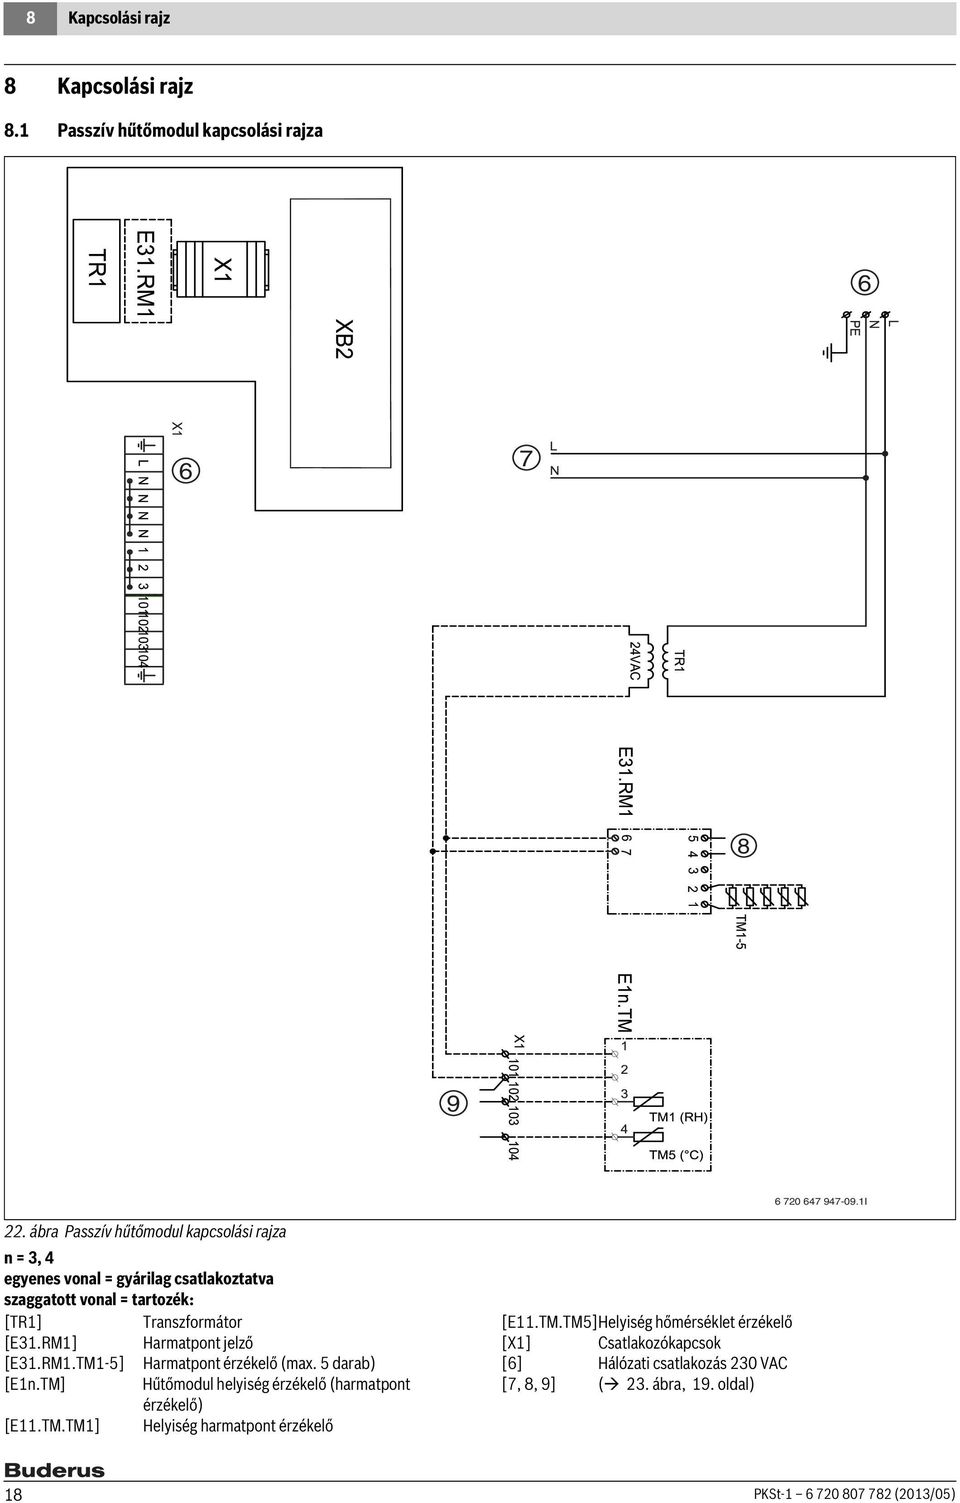 RM] Harmatpont jelző [E3.RM.M-5] Harmatpont érzékelő (max. 5 darab) [En.M] Hűtőmodul helyiség érzékelő (harmatpont érzékelő) [E.M.M] Helyiség harmatpont érzékelő [E.